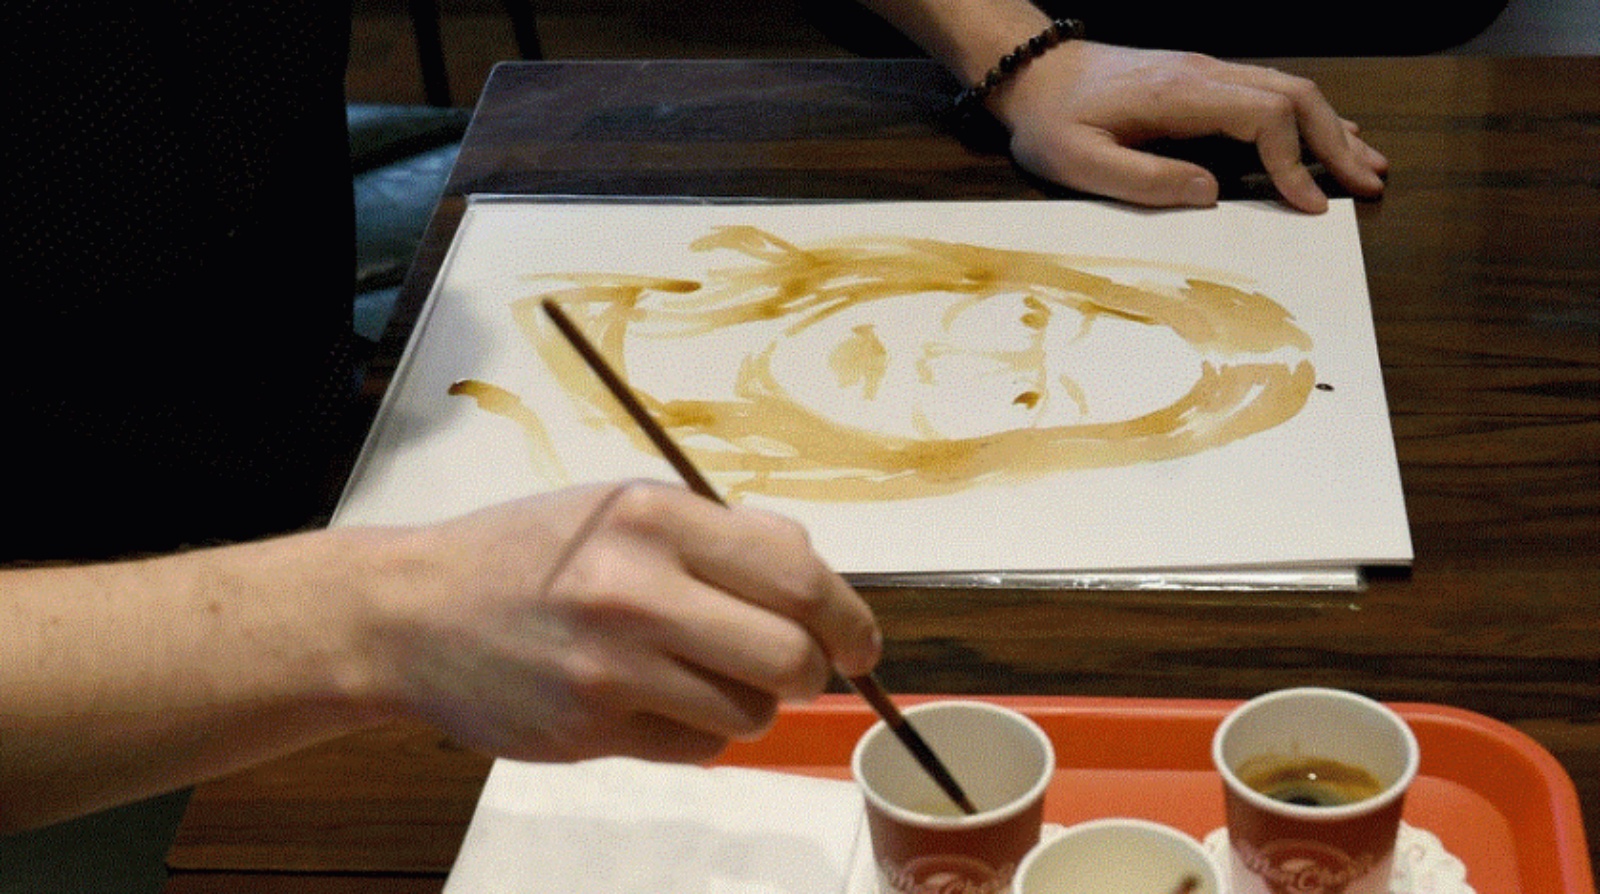 فنان ألباني يستخدم القهوة كأسلوب للعلاج الفني من خلال الرسم